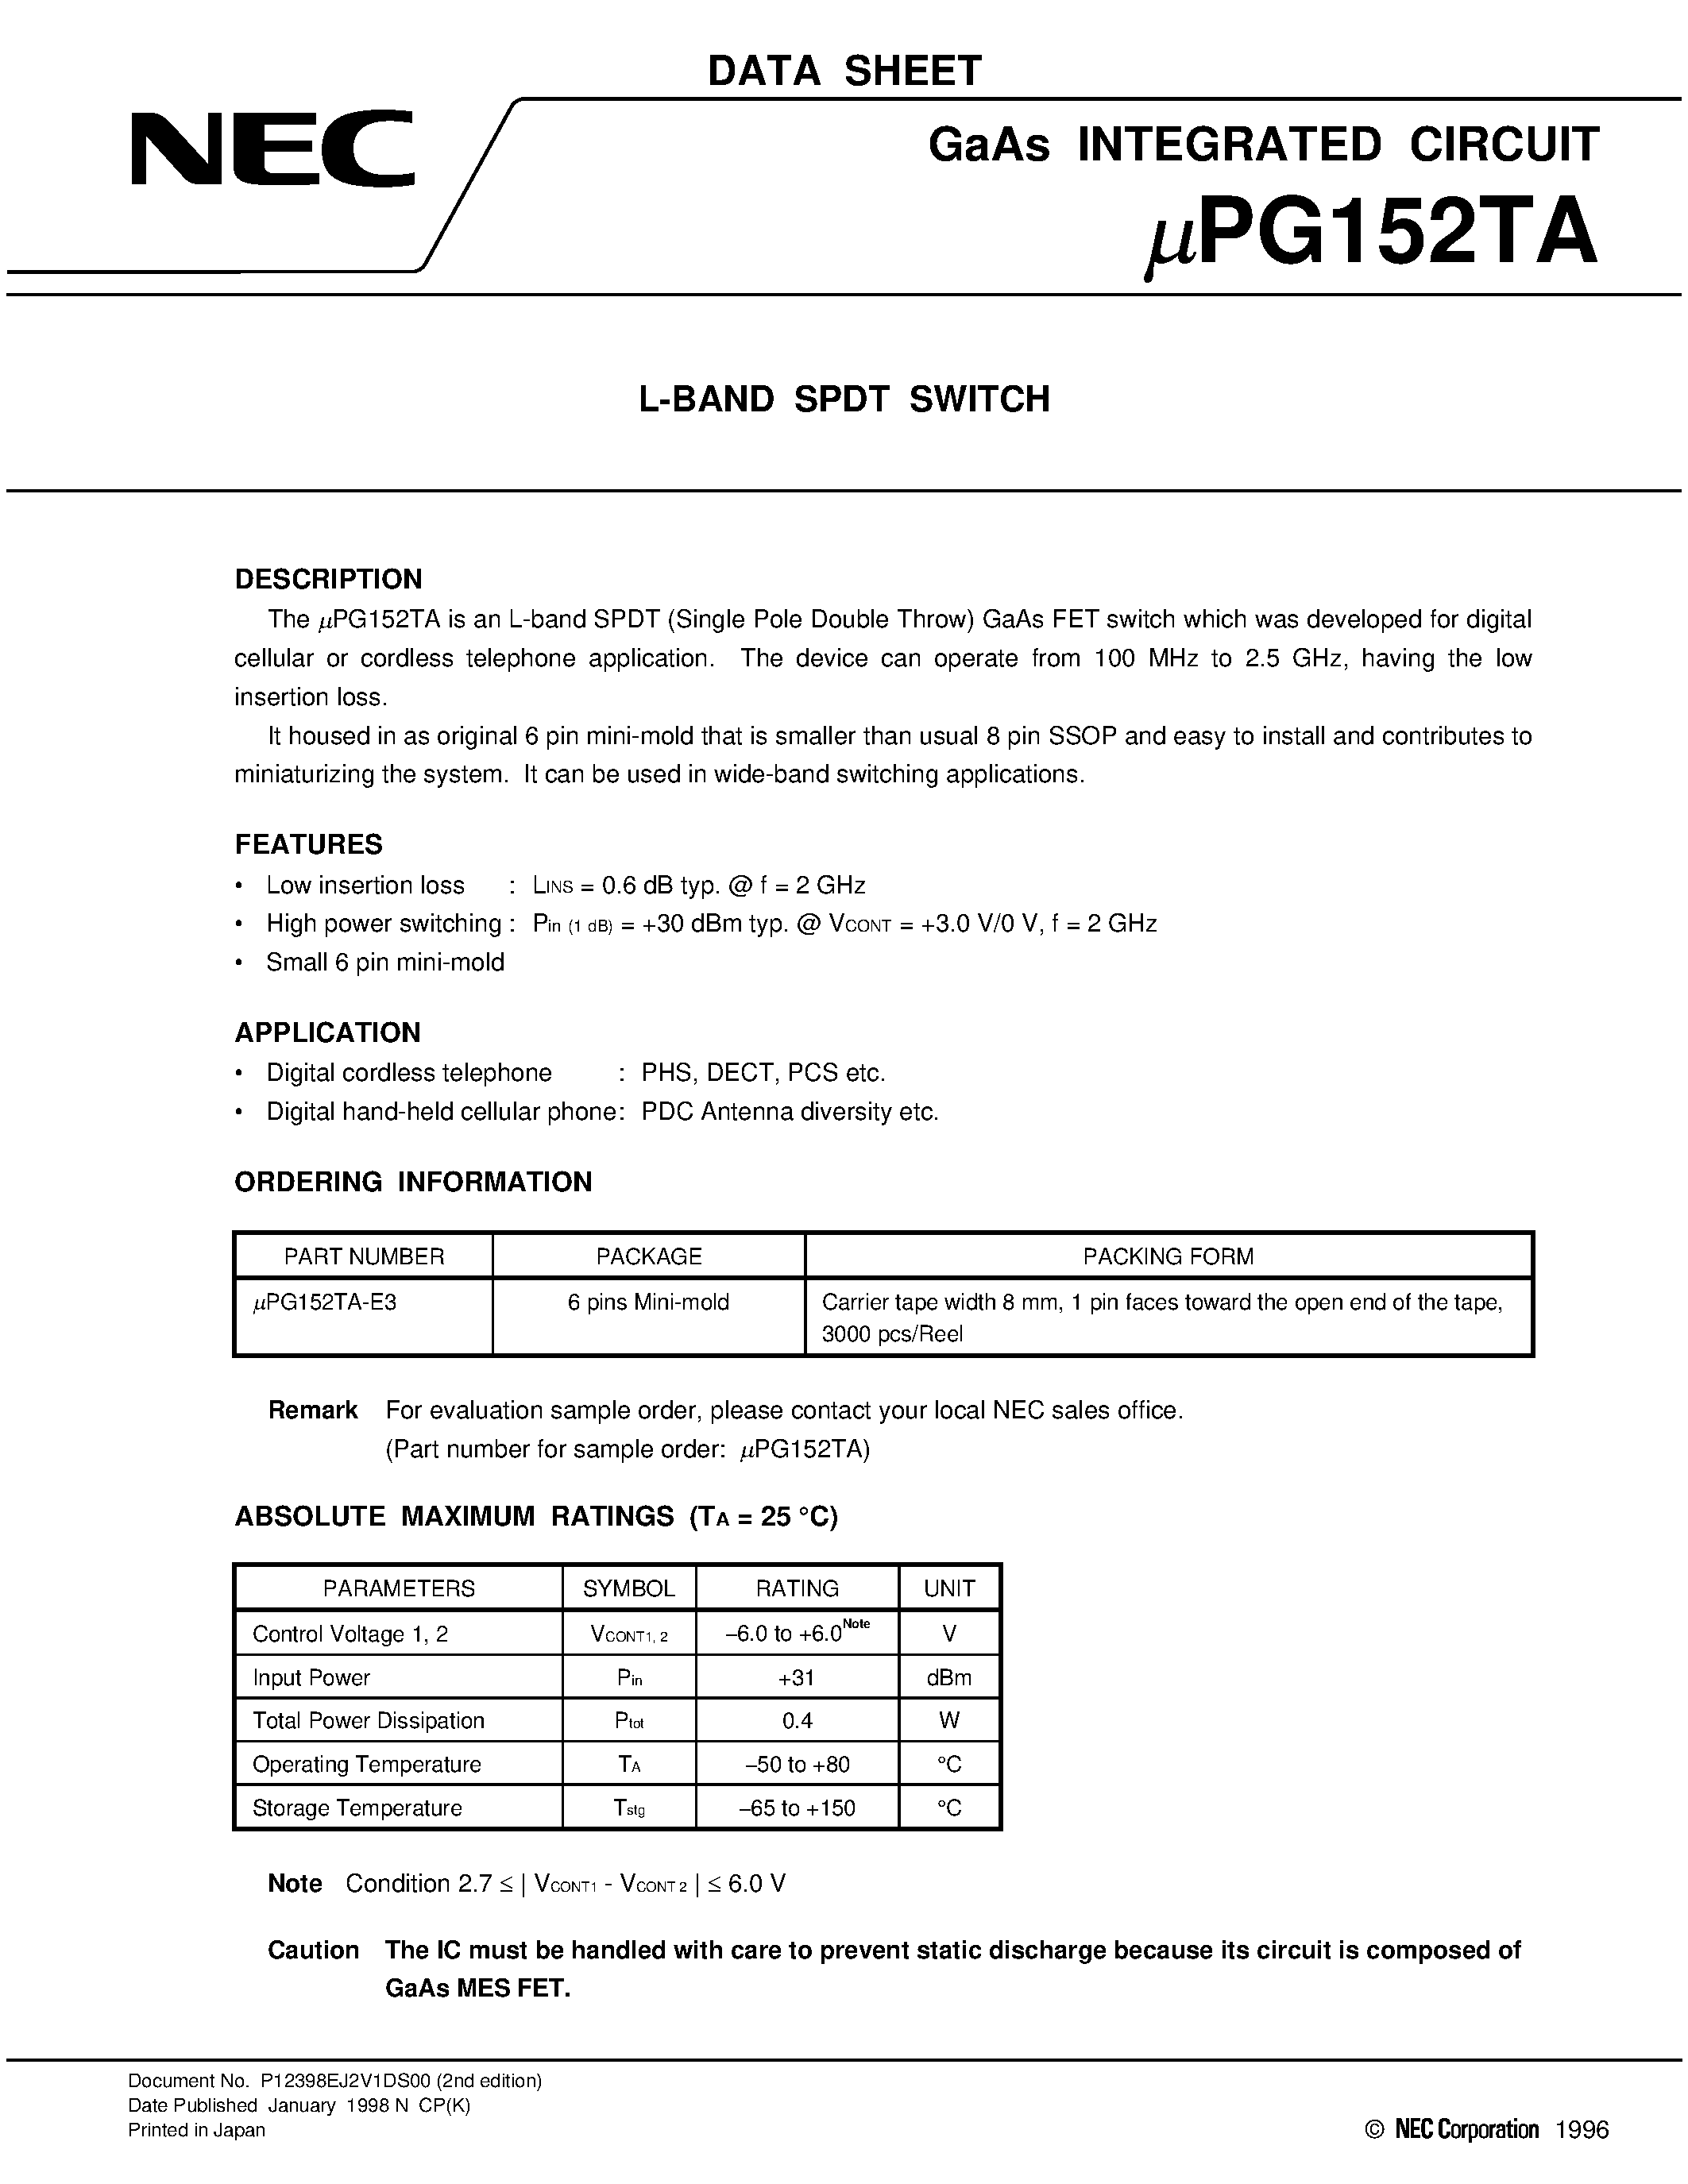 Даташит UPG152TA - L-BAND SPDT SWITCH страница 1